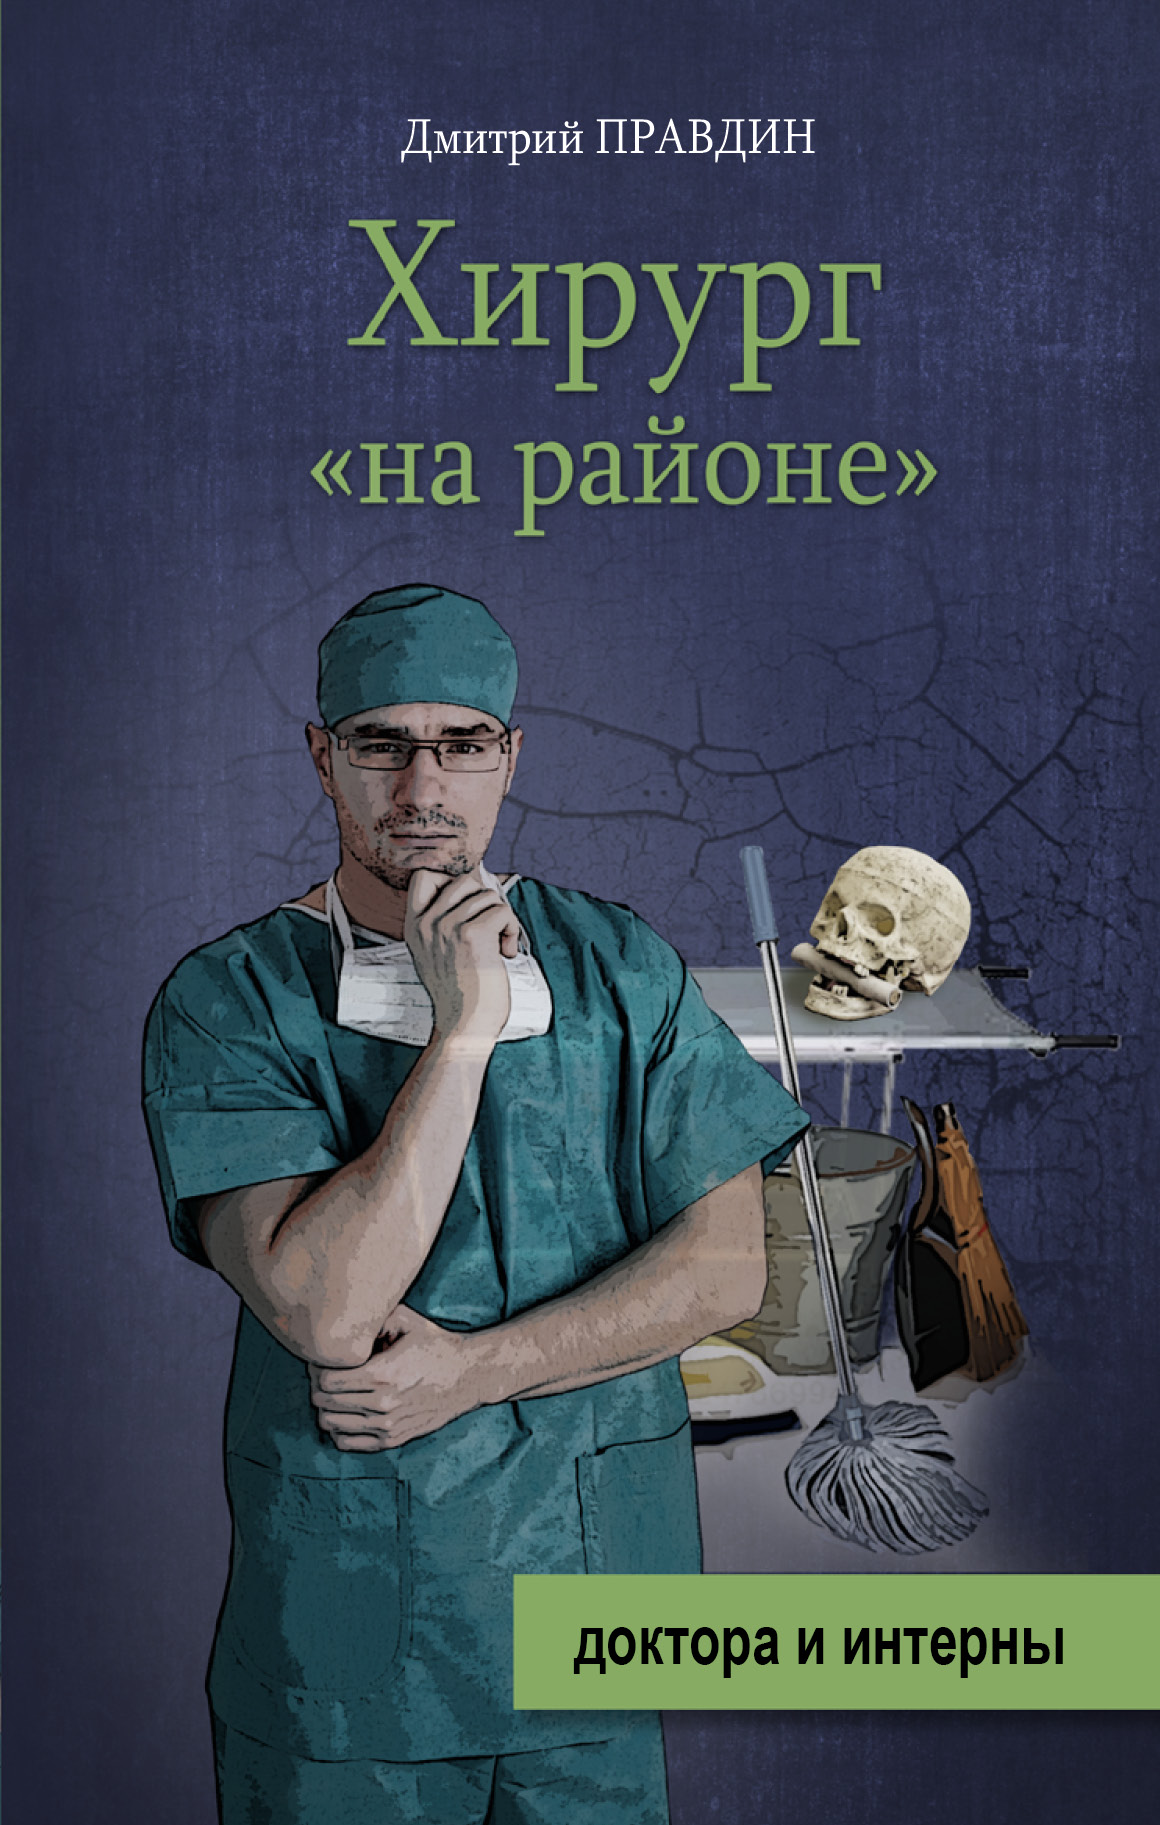 Книги про врачей читать